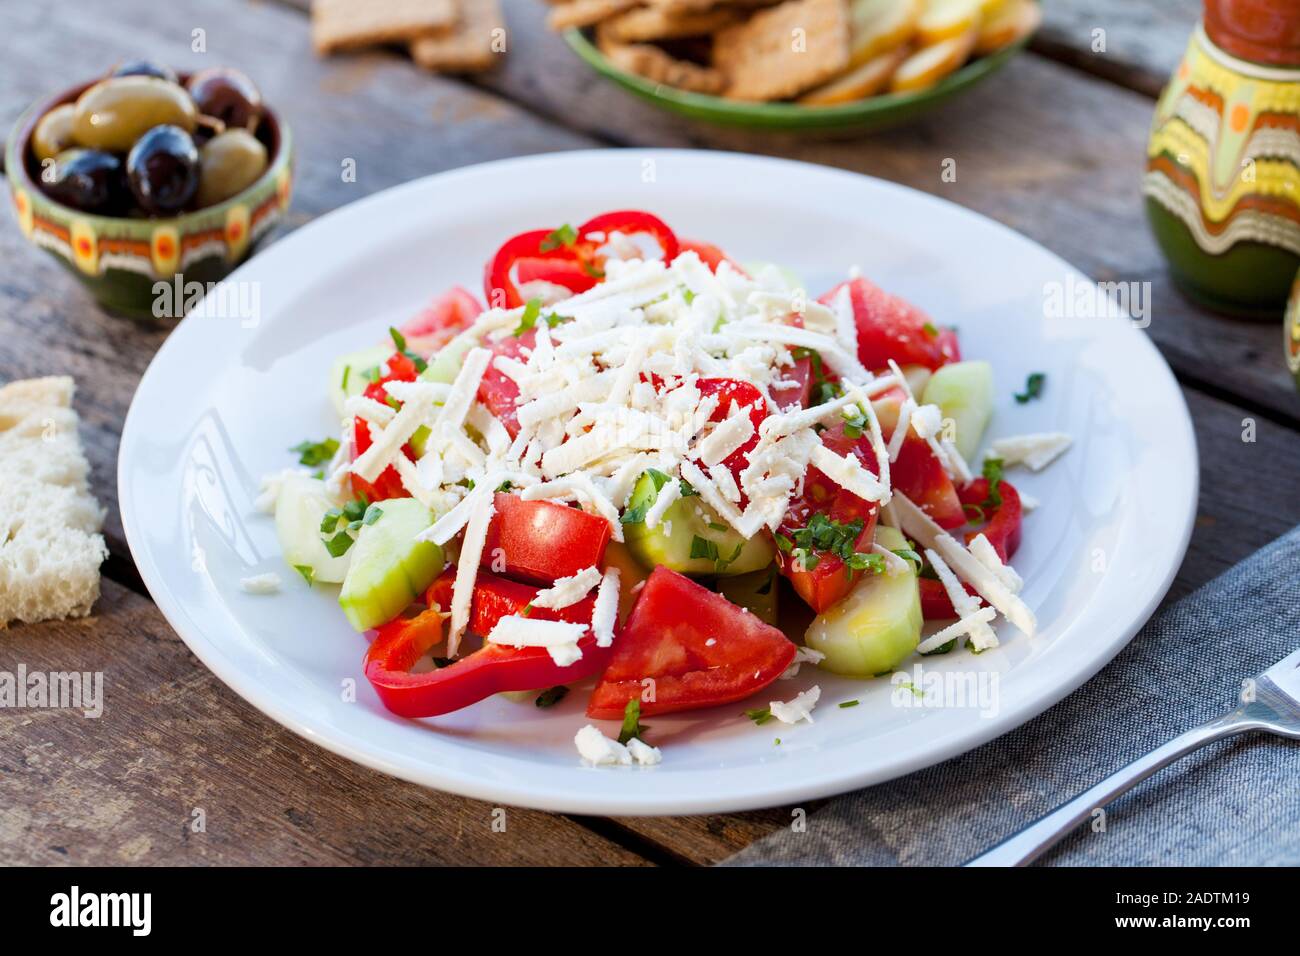 Légumes salade shopska bulgare. Fond de bois. Close up Banque D'Images